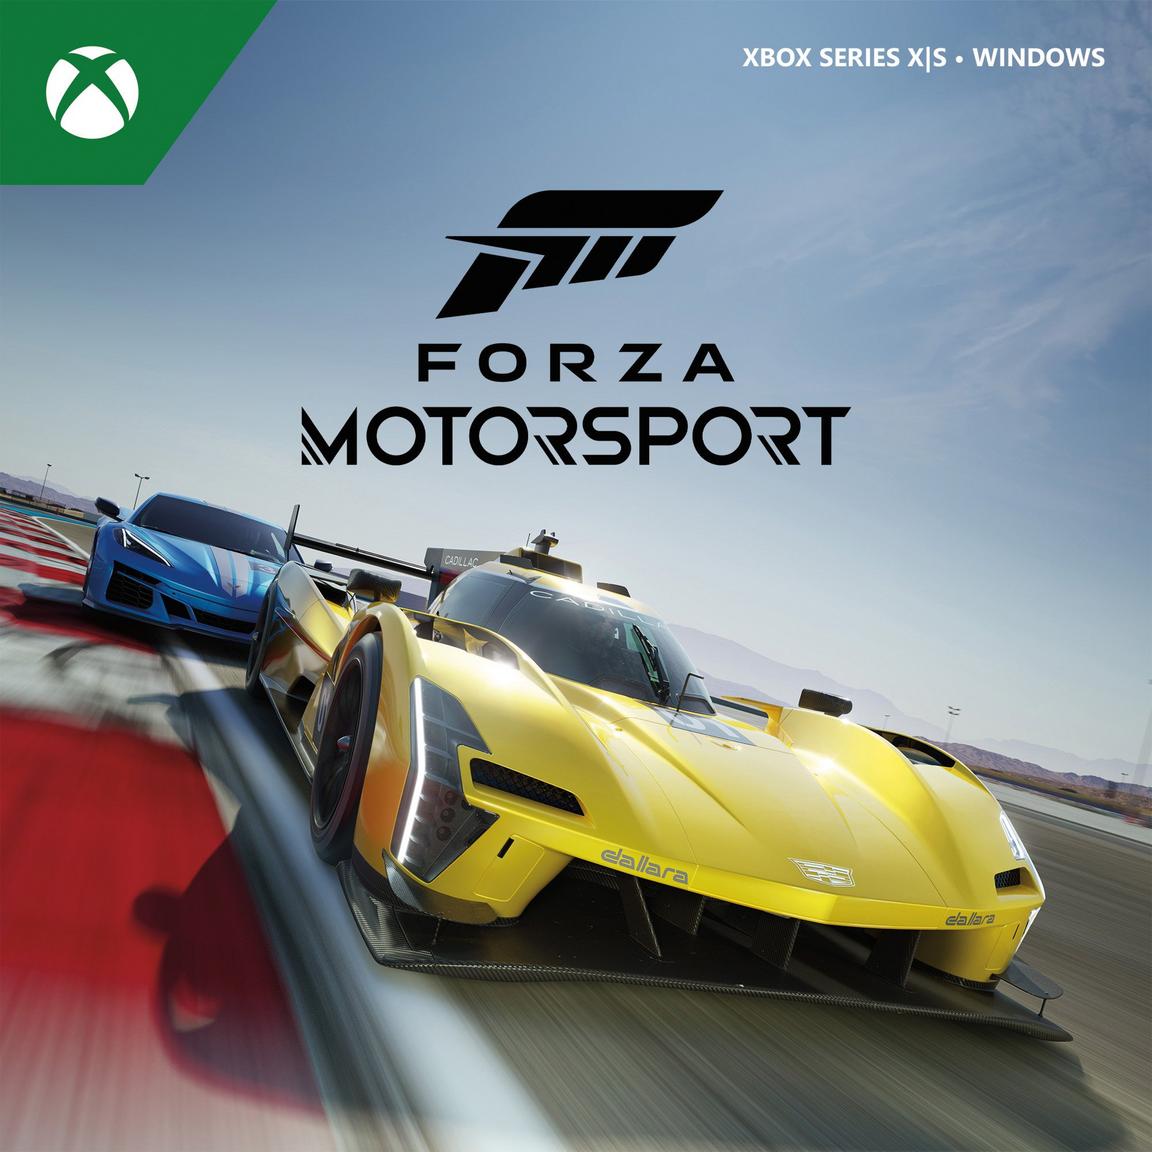 Видеоигра Forza Motorsport - Xbox Series X видеоигра unicorn overlord xbox series x